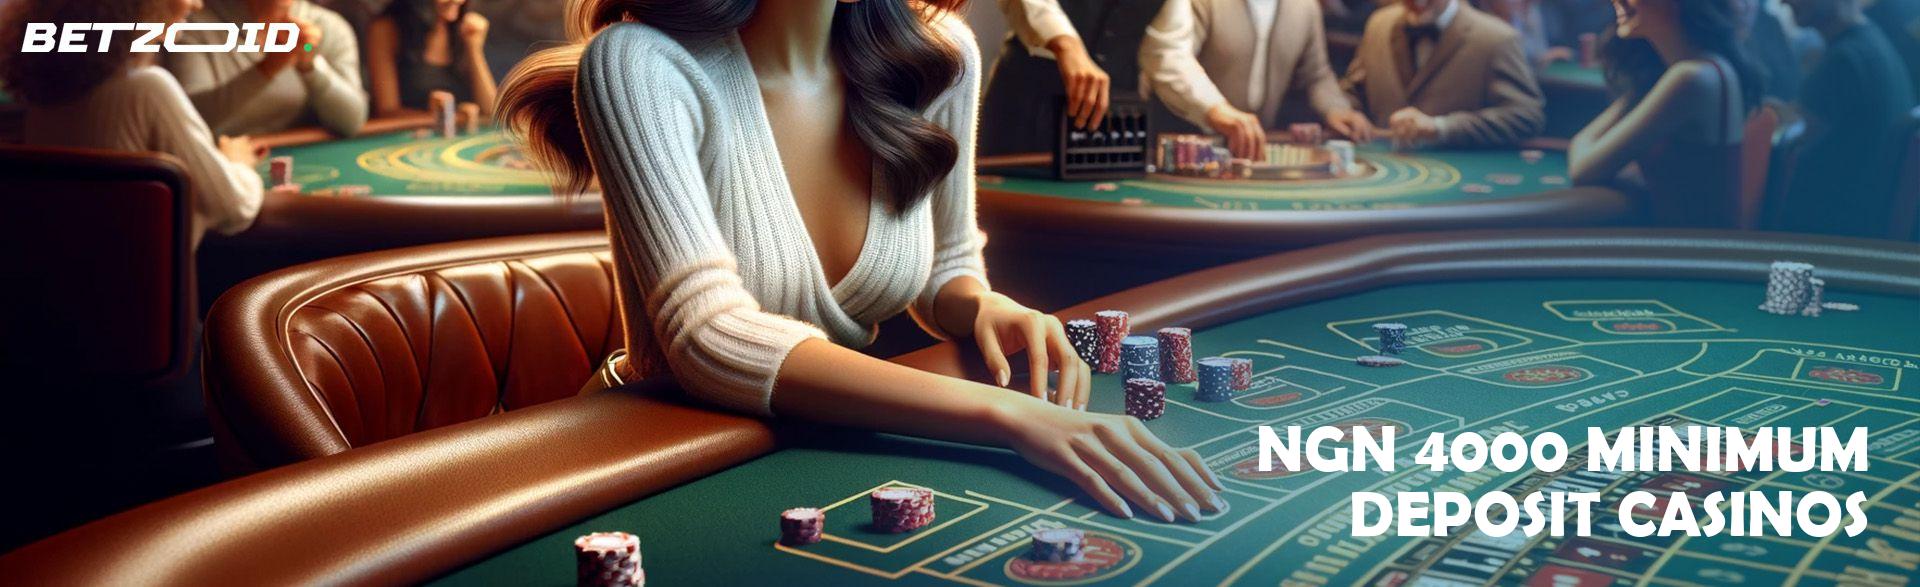 ₦4000 Minimum Deposit Casinos.